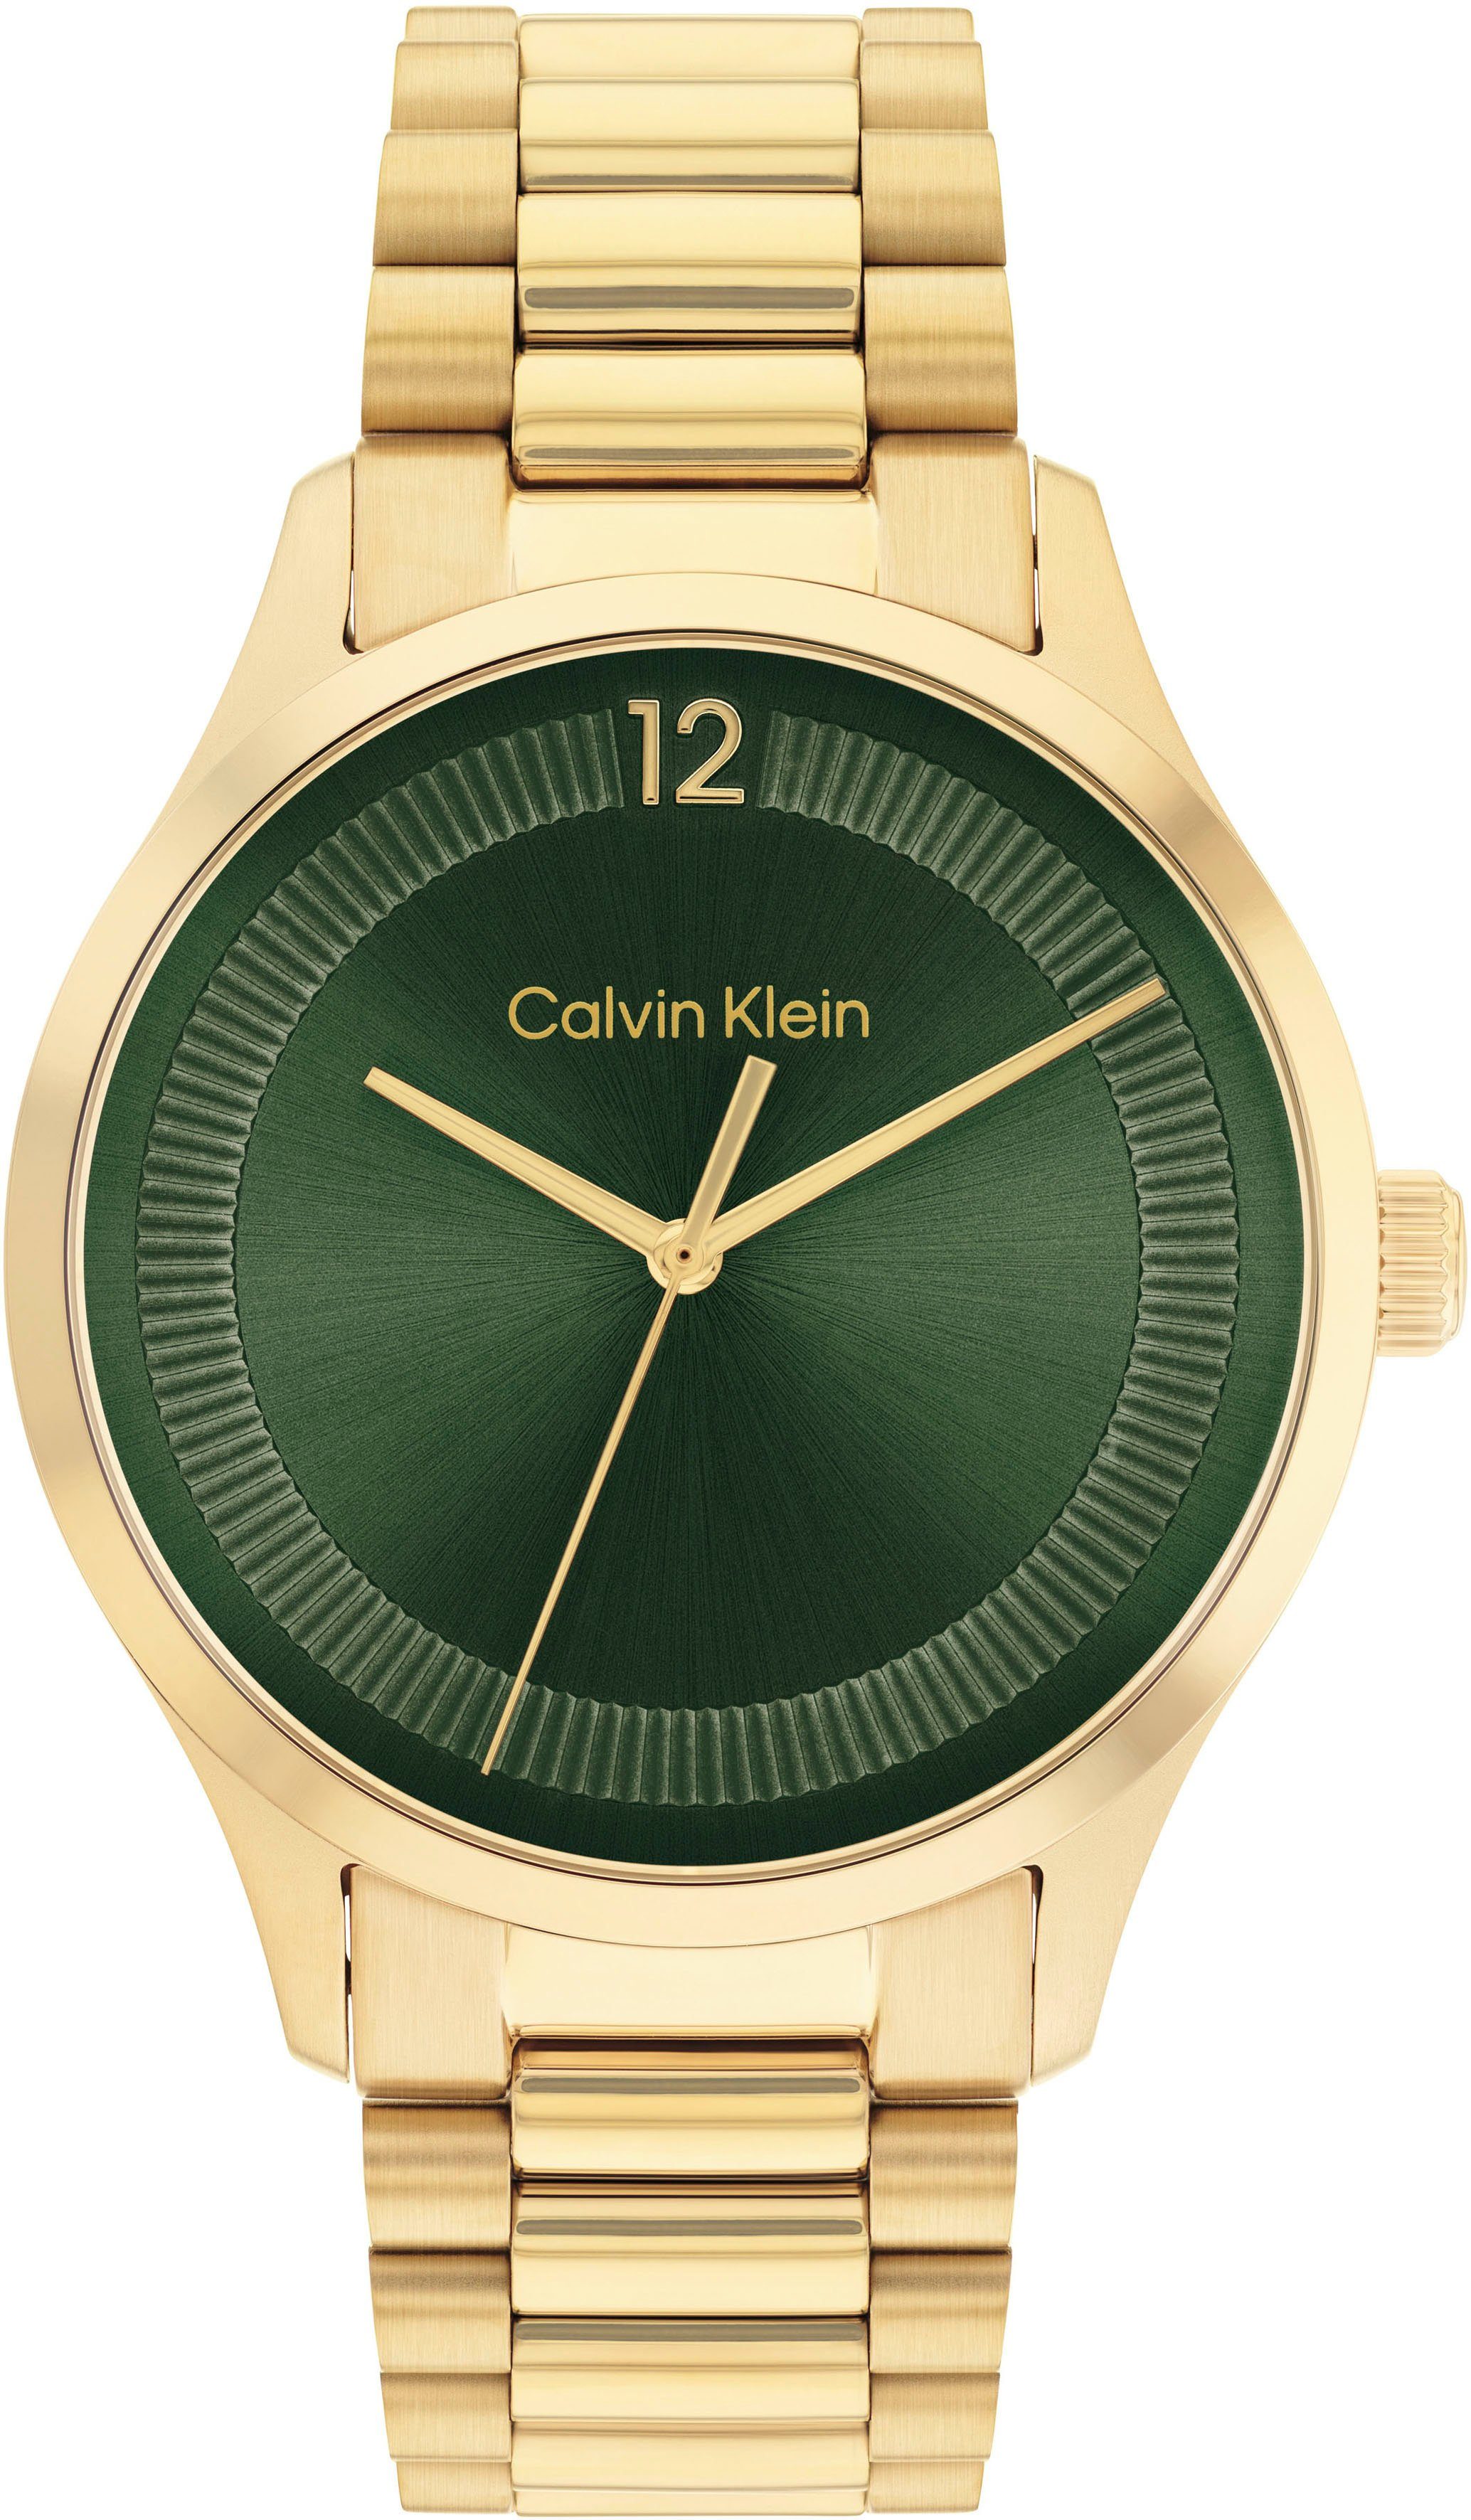 Calvin Klein Quarzuhr ICONIC, 25200229, Armbanduhr, Herrenuhr, Mineralglas, IP-Beschichtung